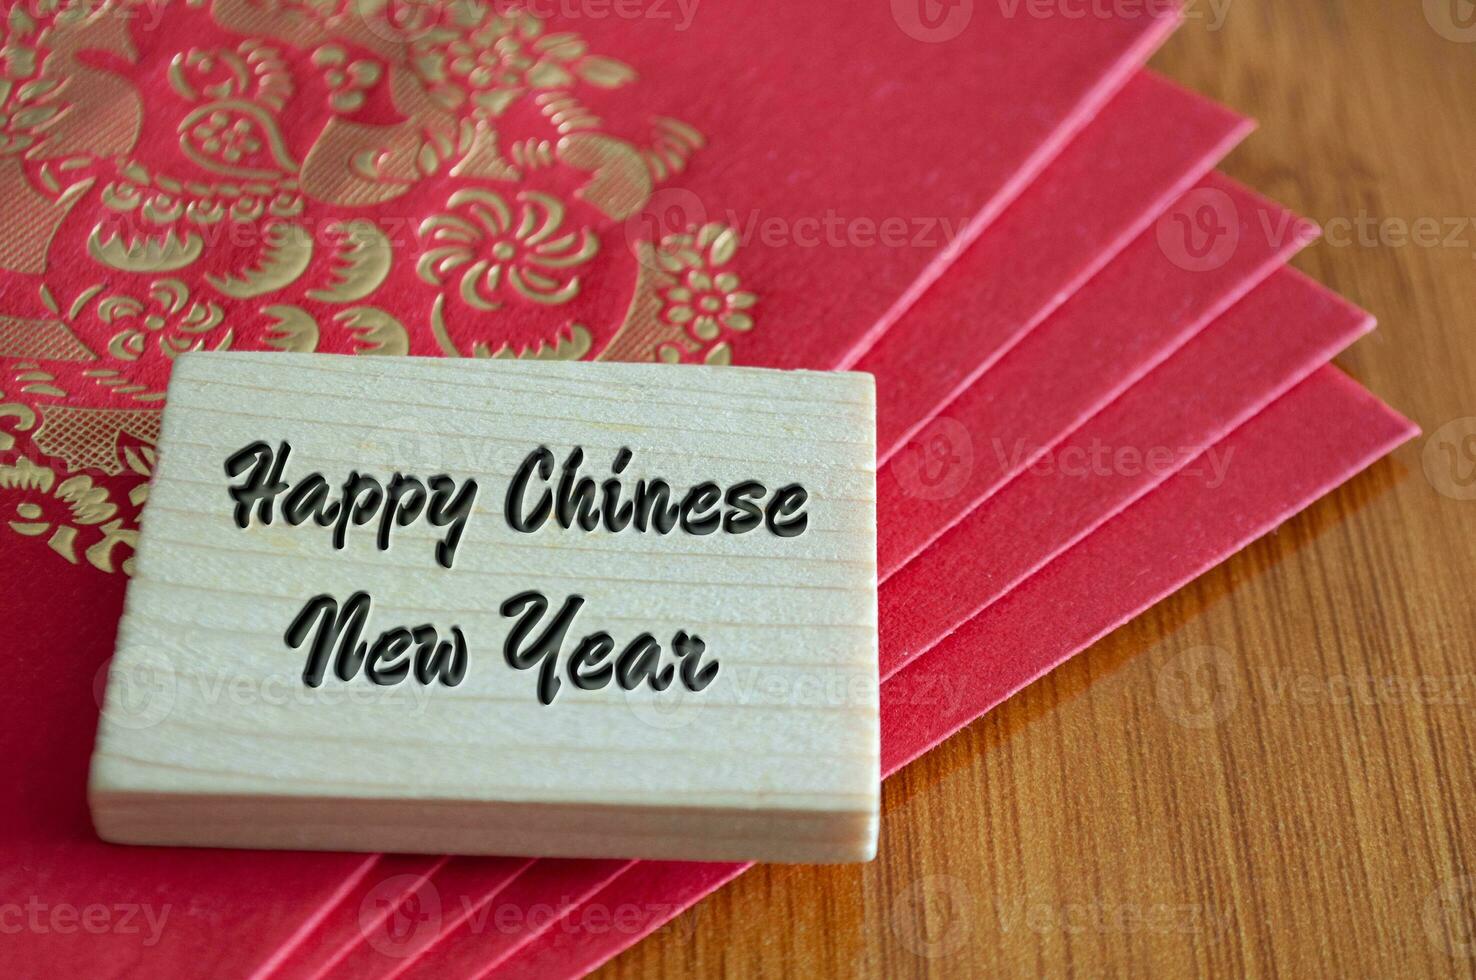 contento chino nuevo año deseos con rojo paquetes sobre foto